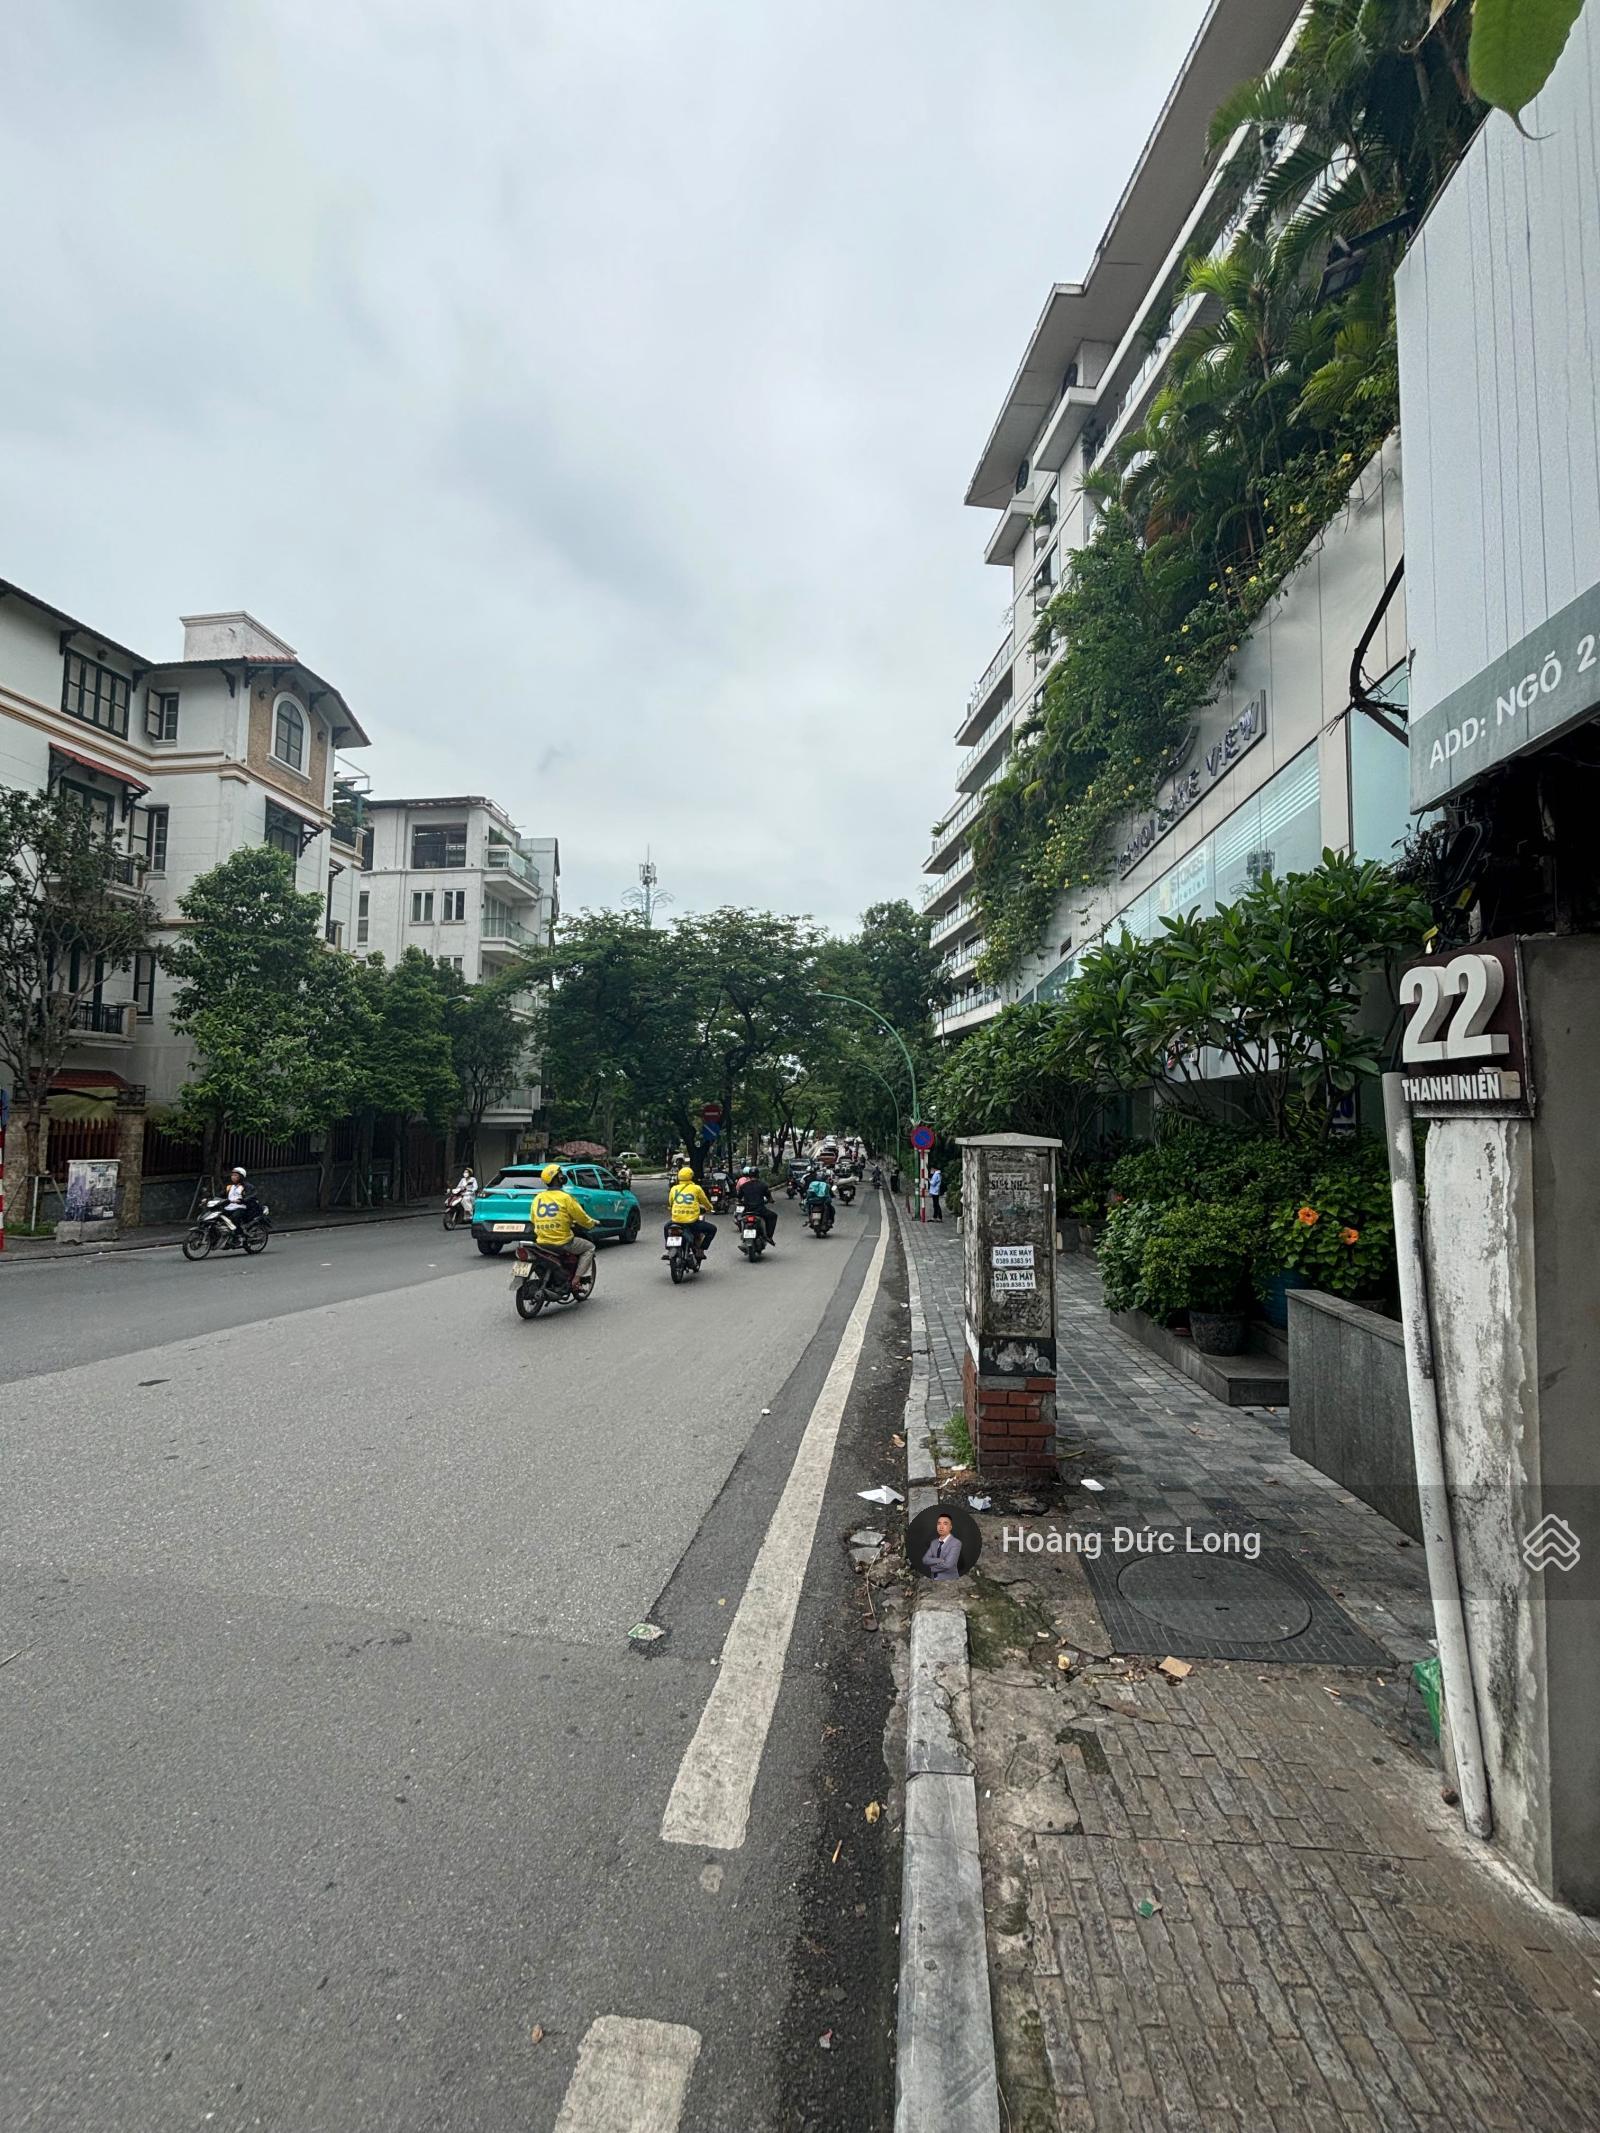 (Cực hiếm) bán nhà mặt phố đường Thanh Niên, lô góc, 83m, 4 tầng, giá 32.3 tỷ LH: 0976388663